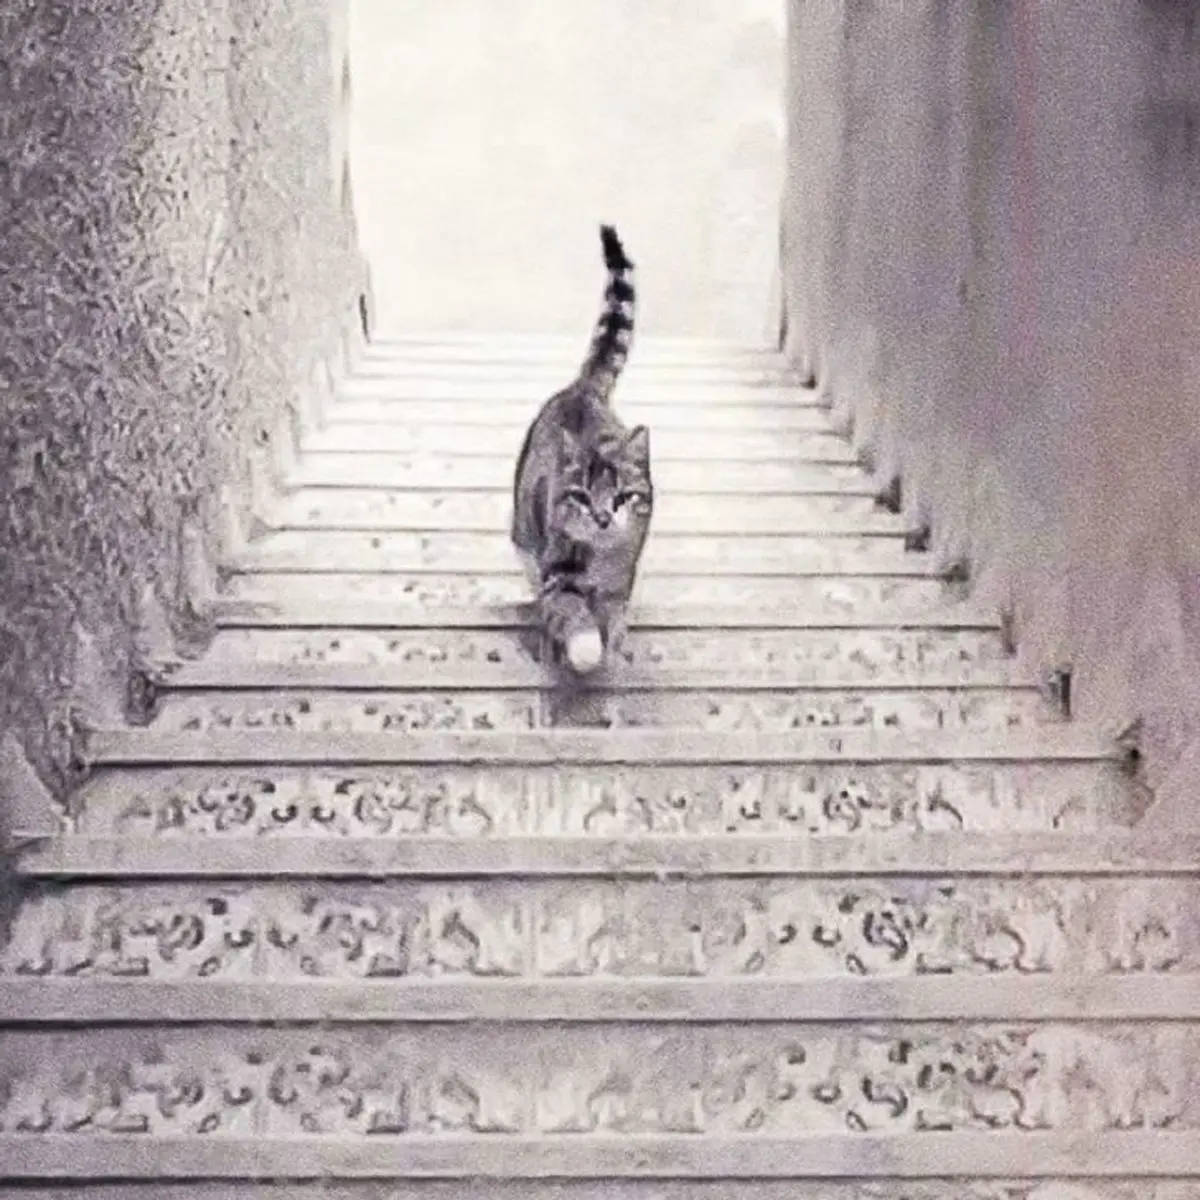 گربه از پله ها بالا می رود یا پایین؟ | یک تست شخصیت شناسی عجیب